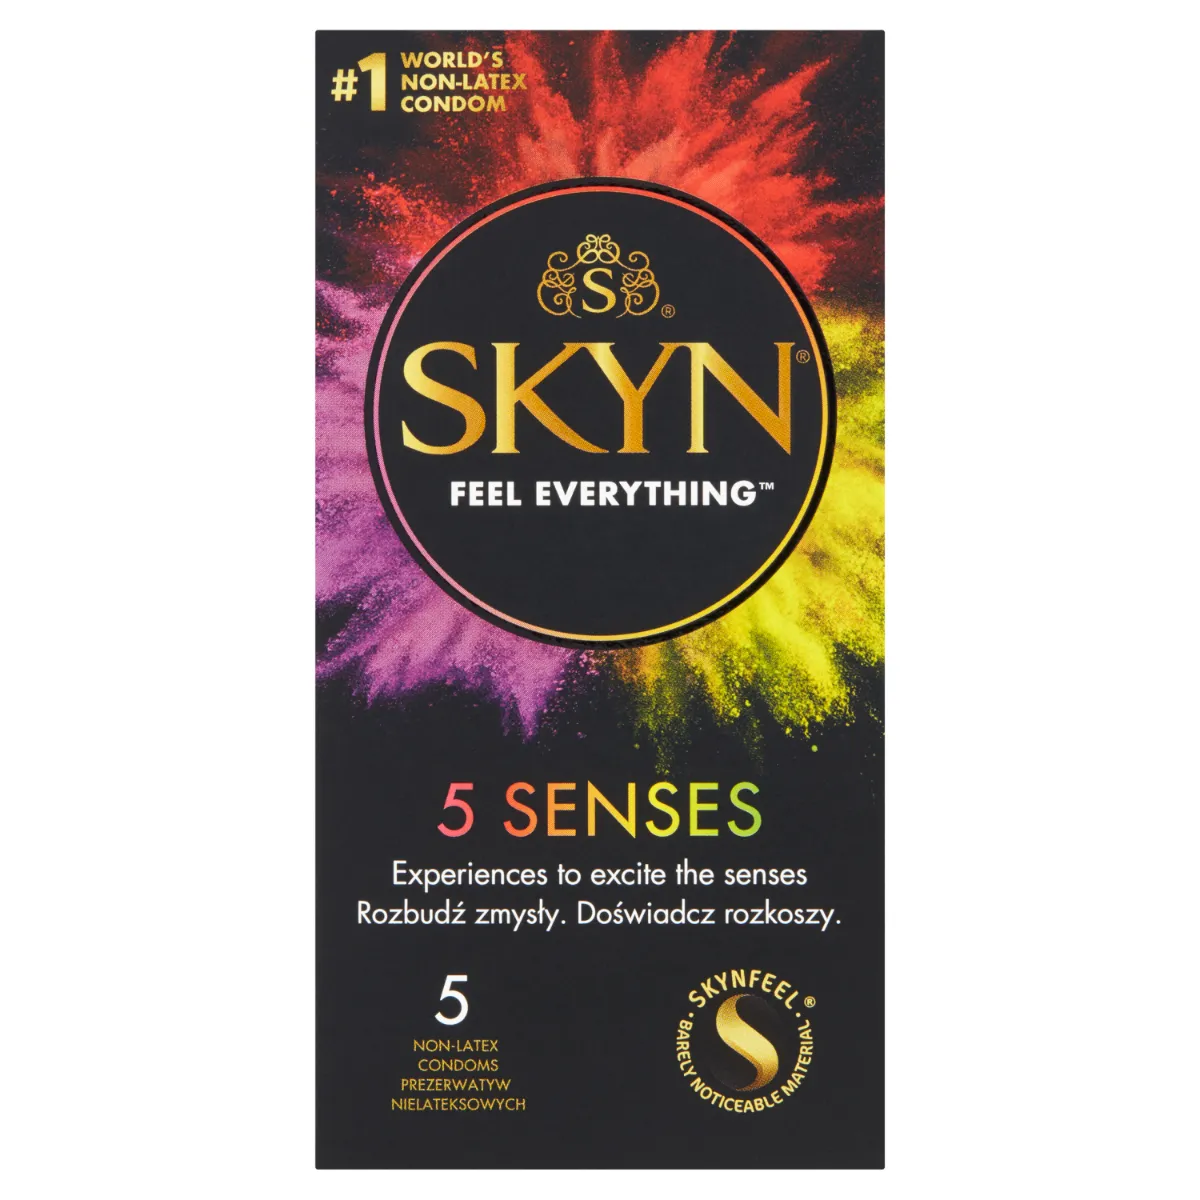 Skyn 5 Senses, nielateksowe prezerwatywy, 5 rodzajów, 5 sztuk